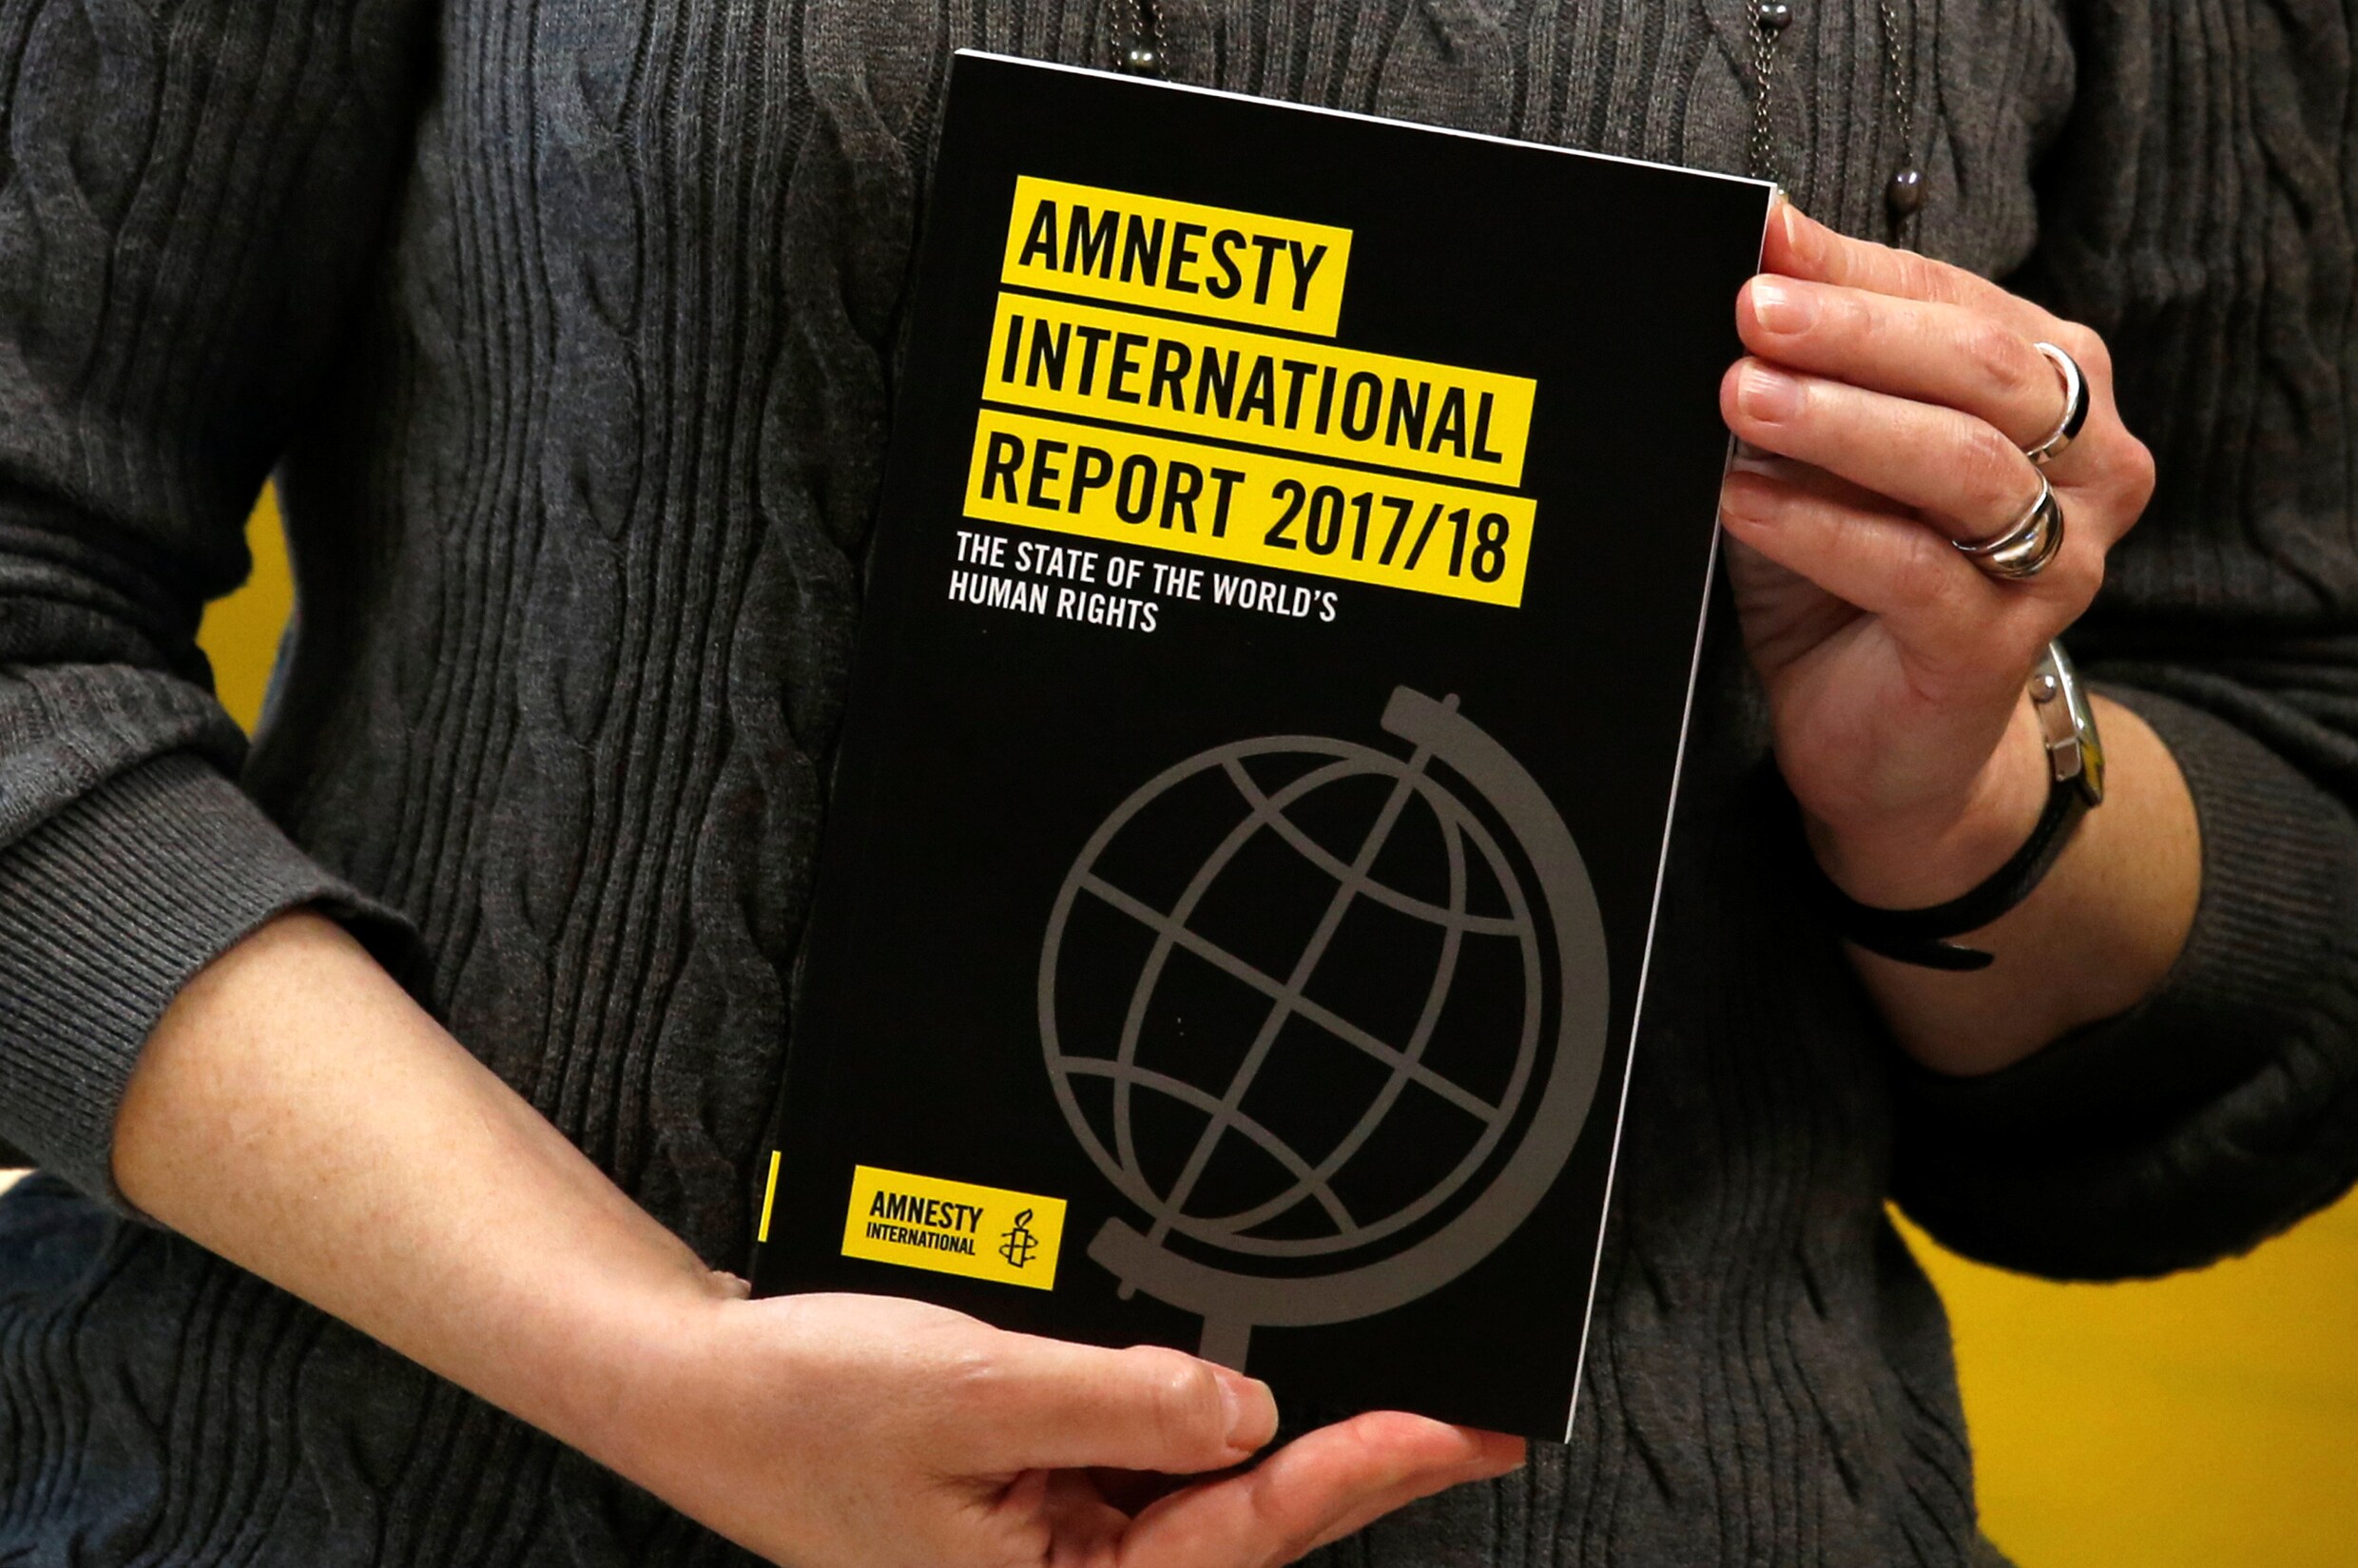 België krijgt veeg uit de pan in jaarrapport over mensenrechten